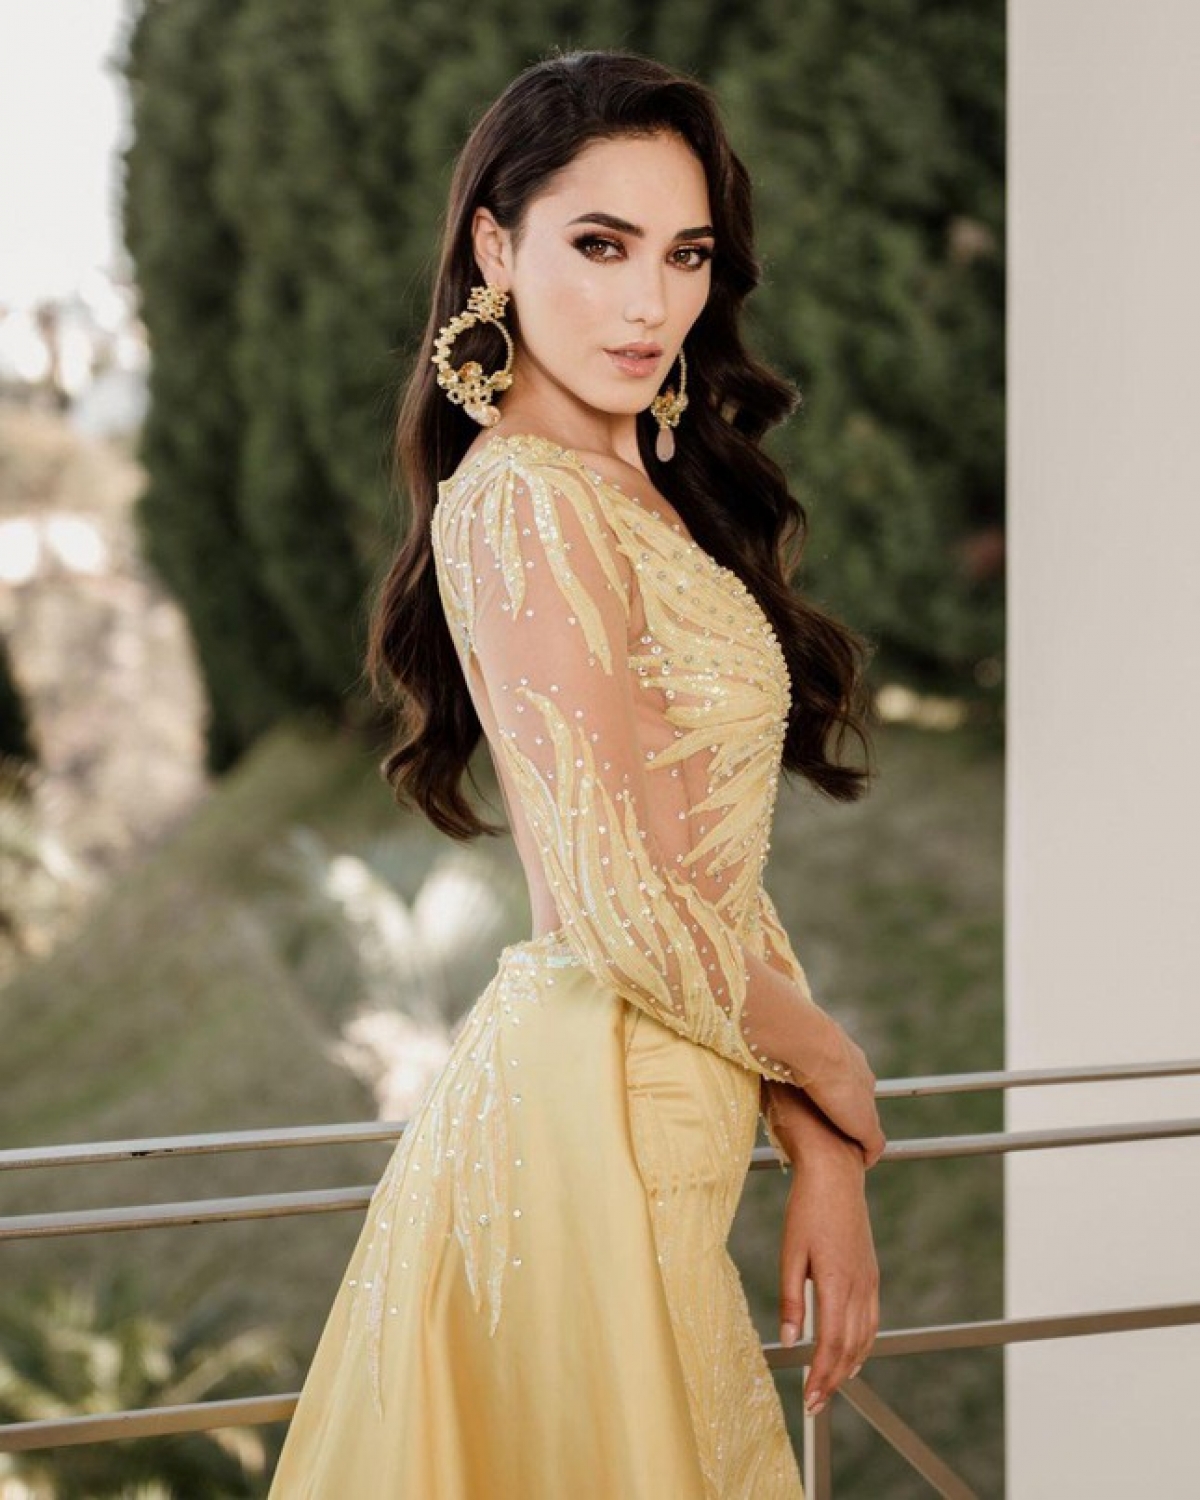 Nhan sắc ngọt ngào của Hoa hậu Mexico - 'Đối thủ' đáng gờm của Đỗ Thị Hà tại Miss World - Ảnh 9.